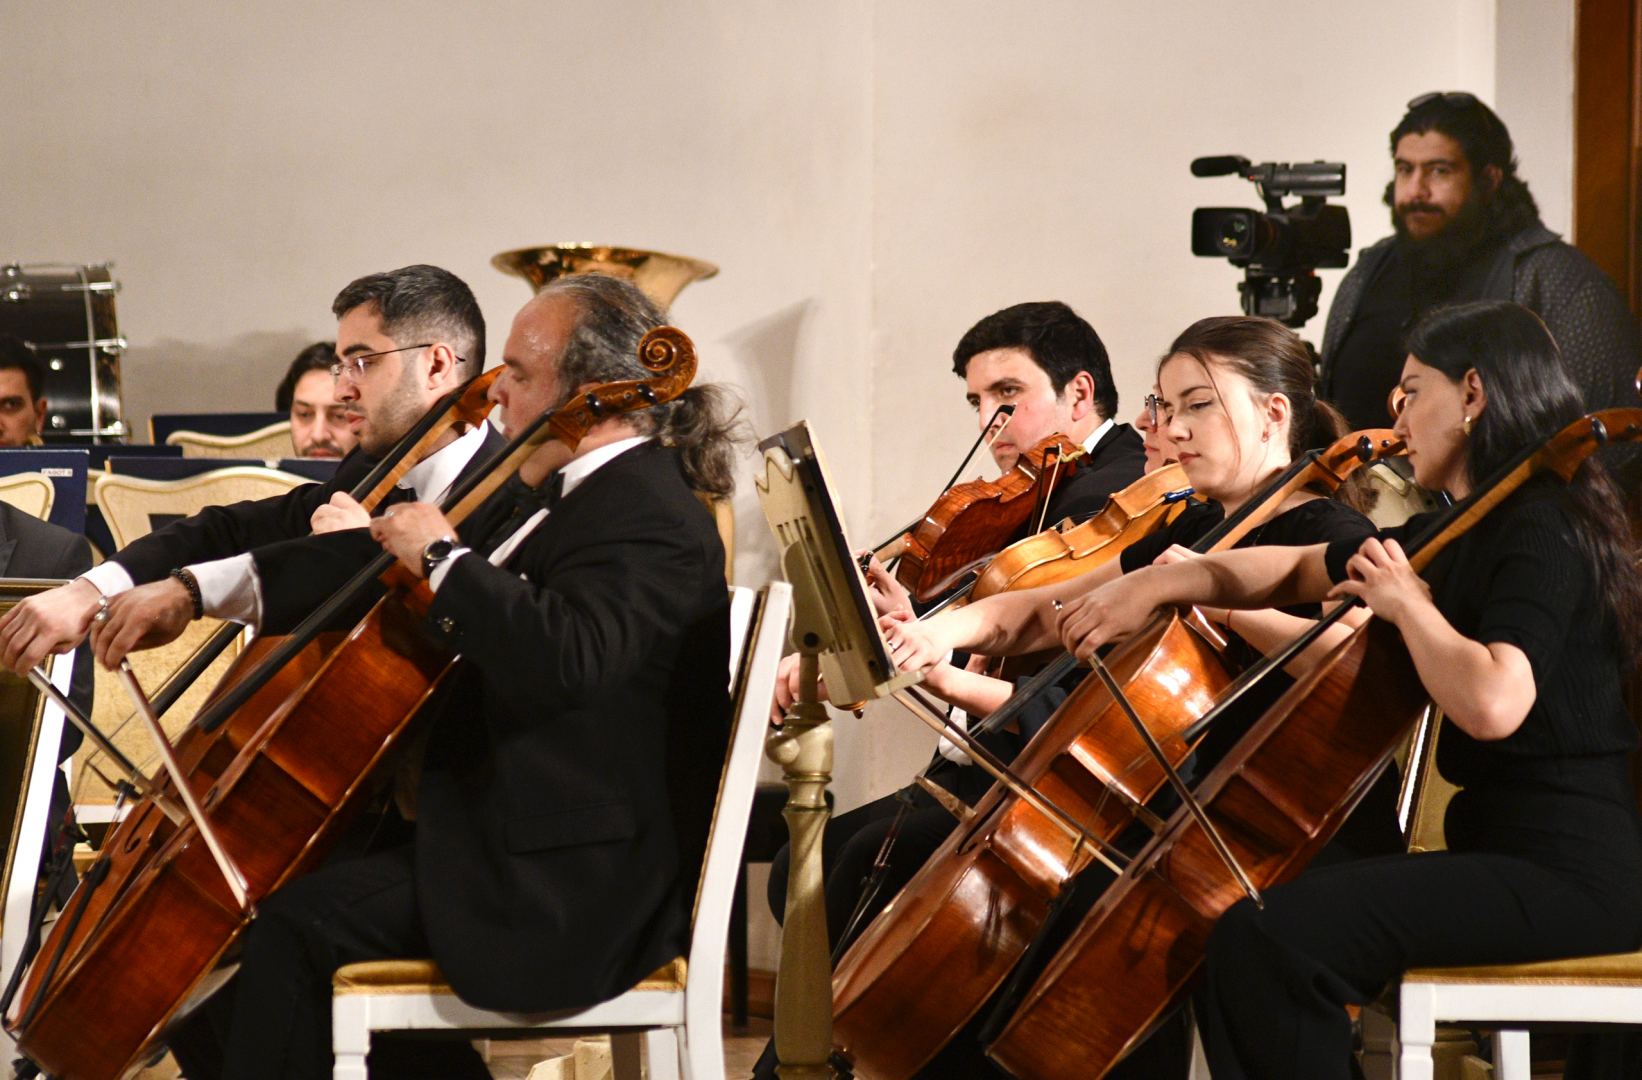 Изысканный  вечер с потомком династии Бюльбюля - на волнах прекрасной музыки (ФОТО/ВИДЕО)